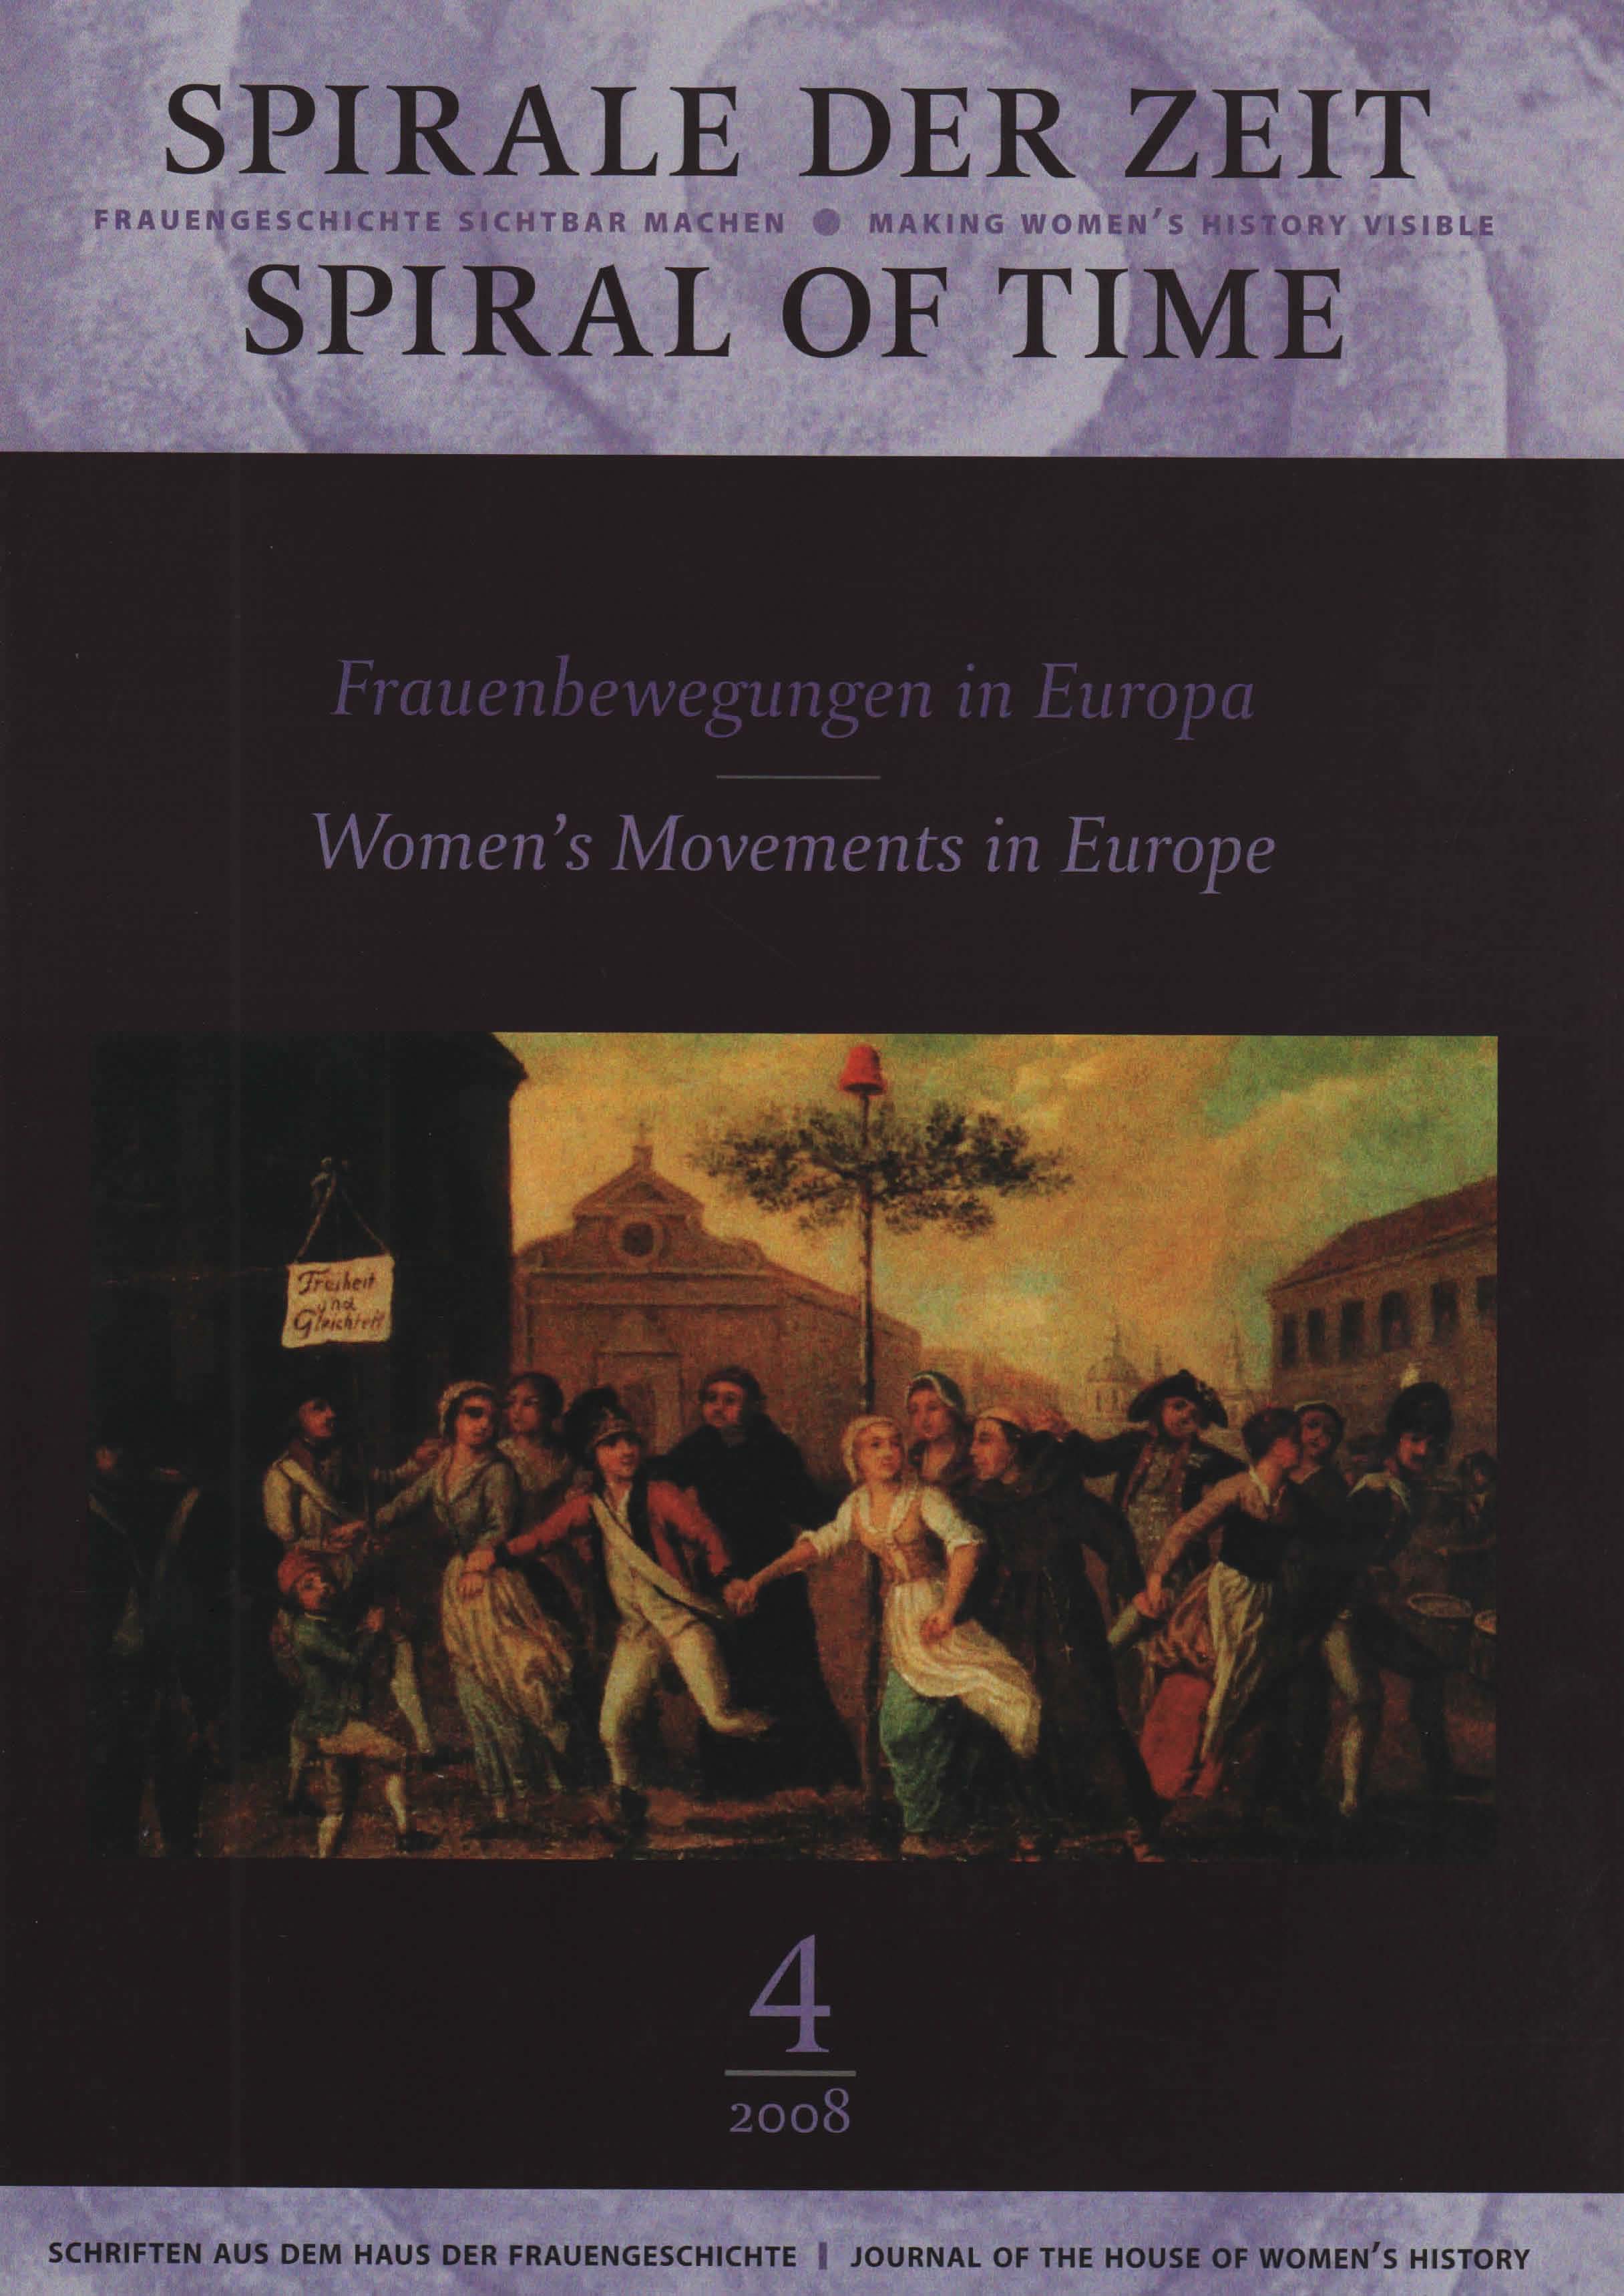 Spirale der Zeit 2-2008: Frauenbewegungen in Europa – Women’s Movements in Europe